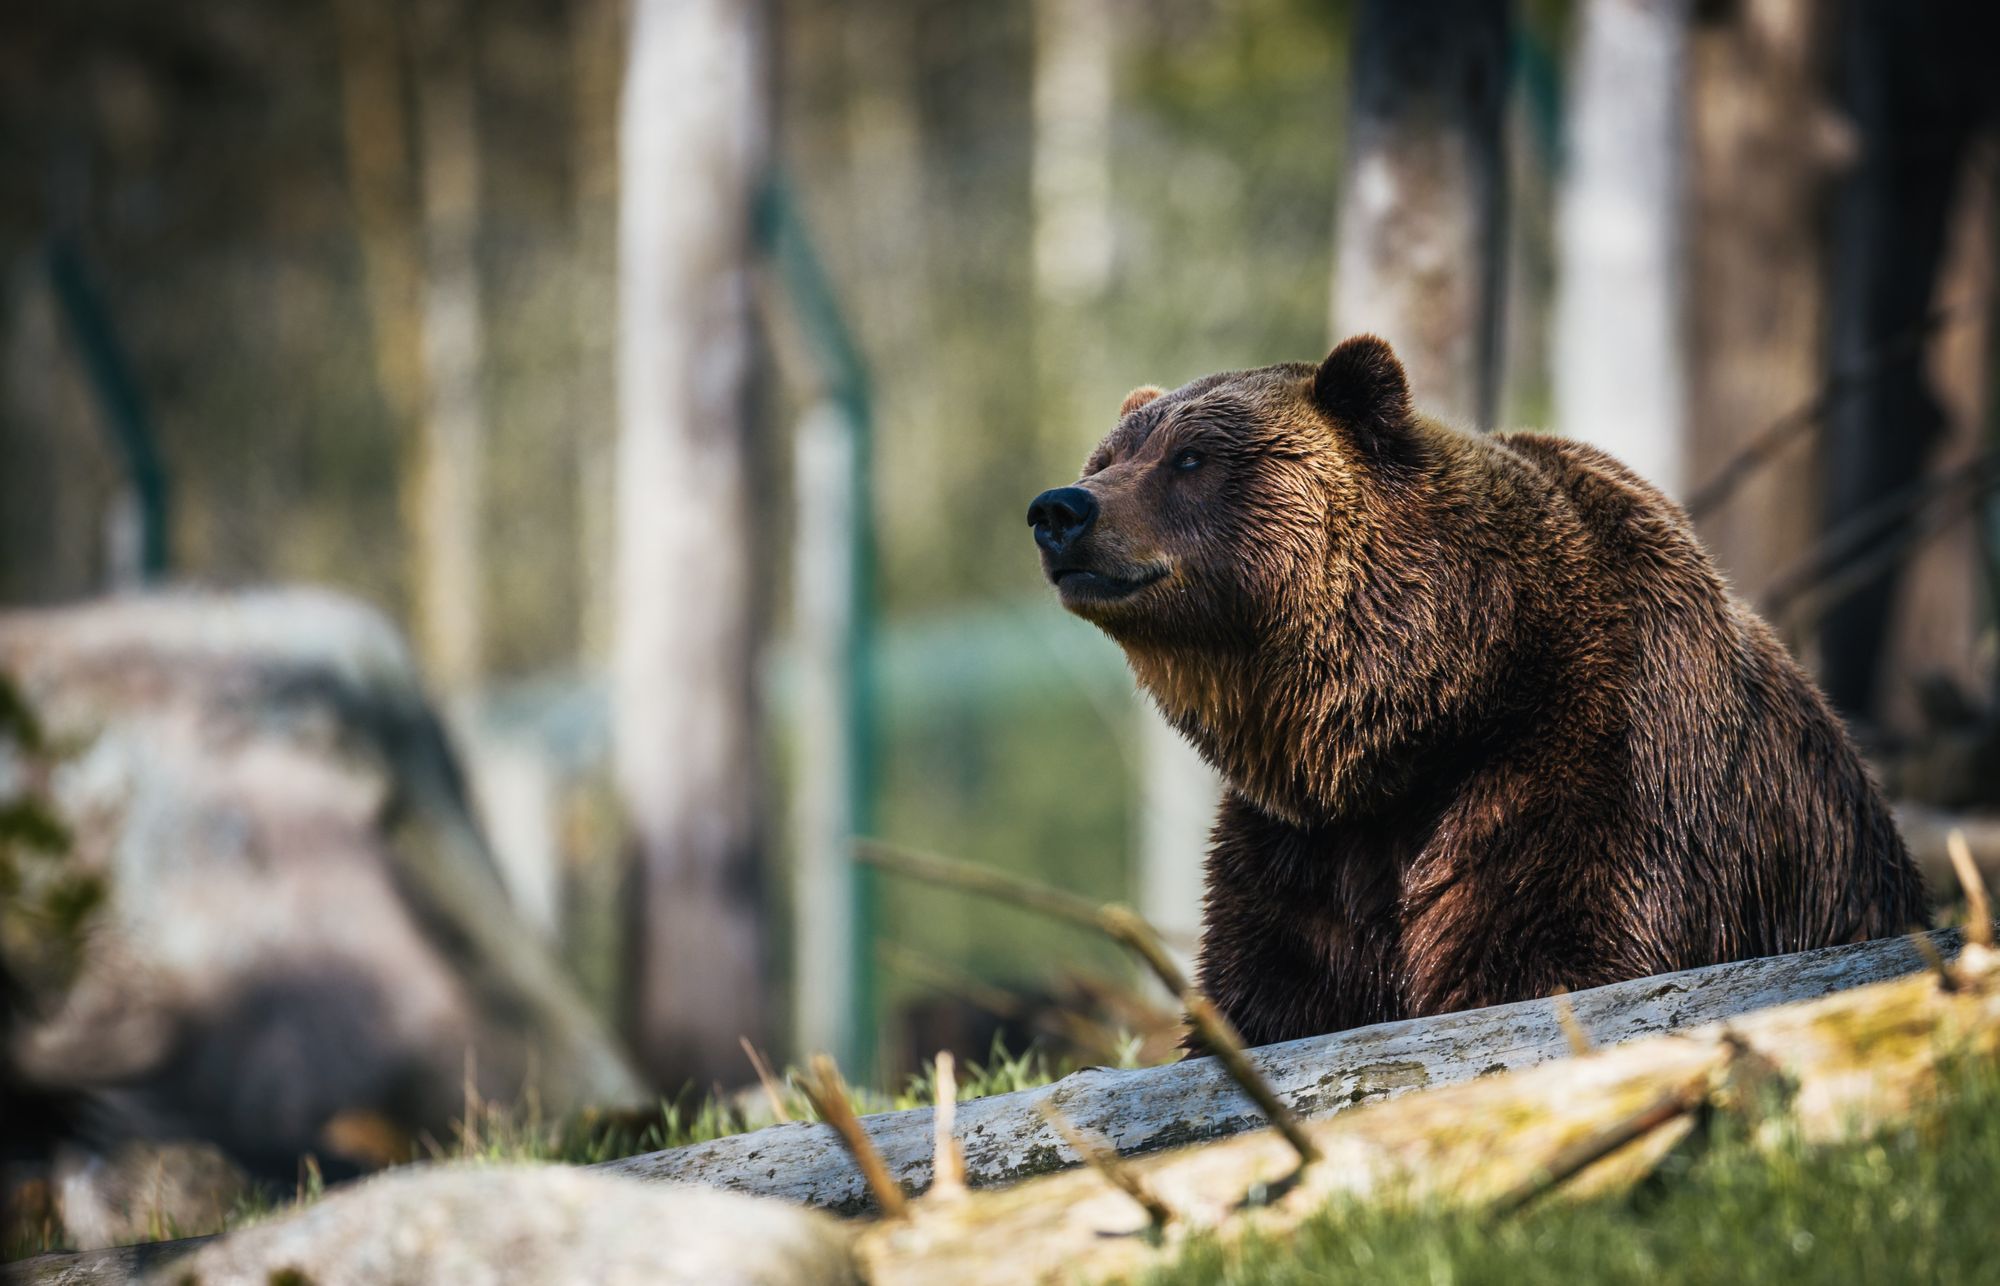 Zkoumání mikrobiomu divokých medvědů může pomoci v boji proti antibiotické rezistenci